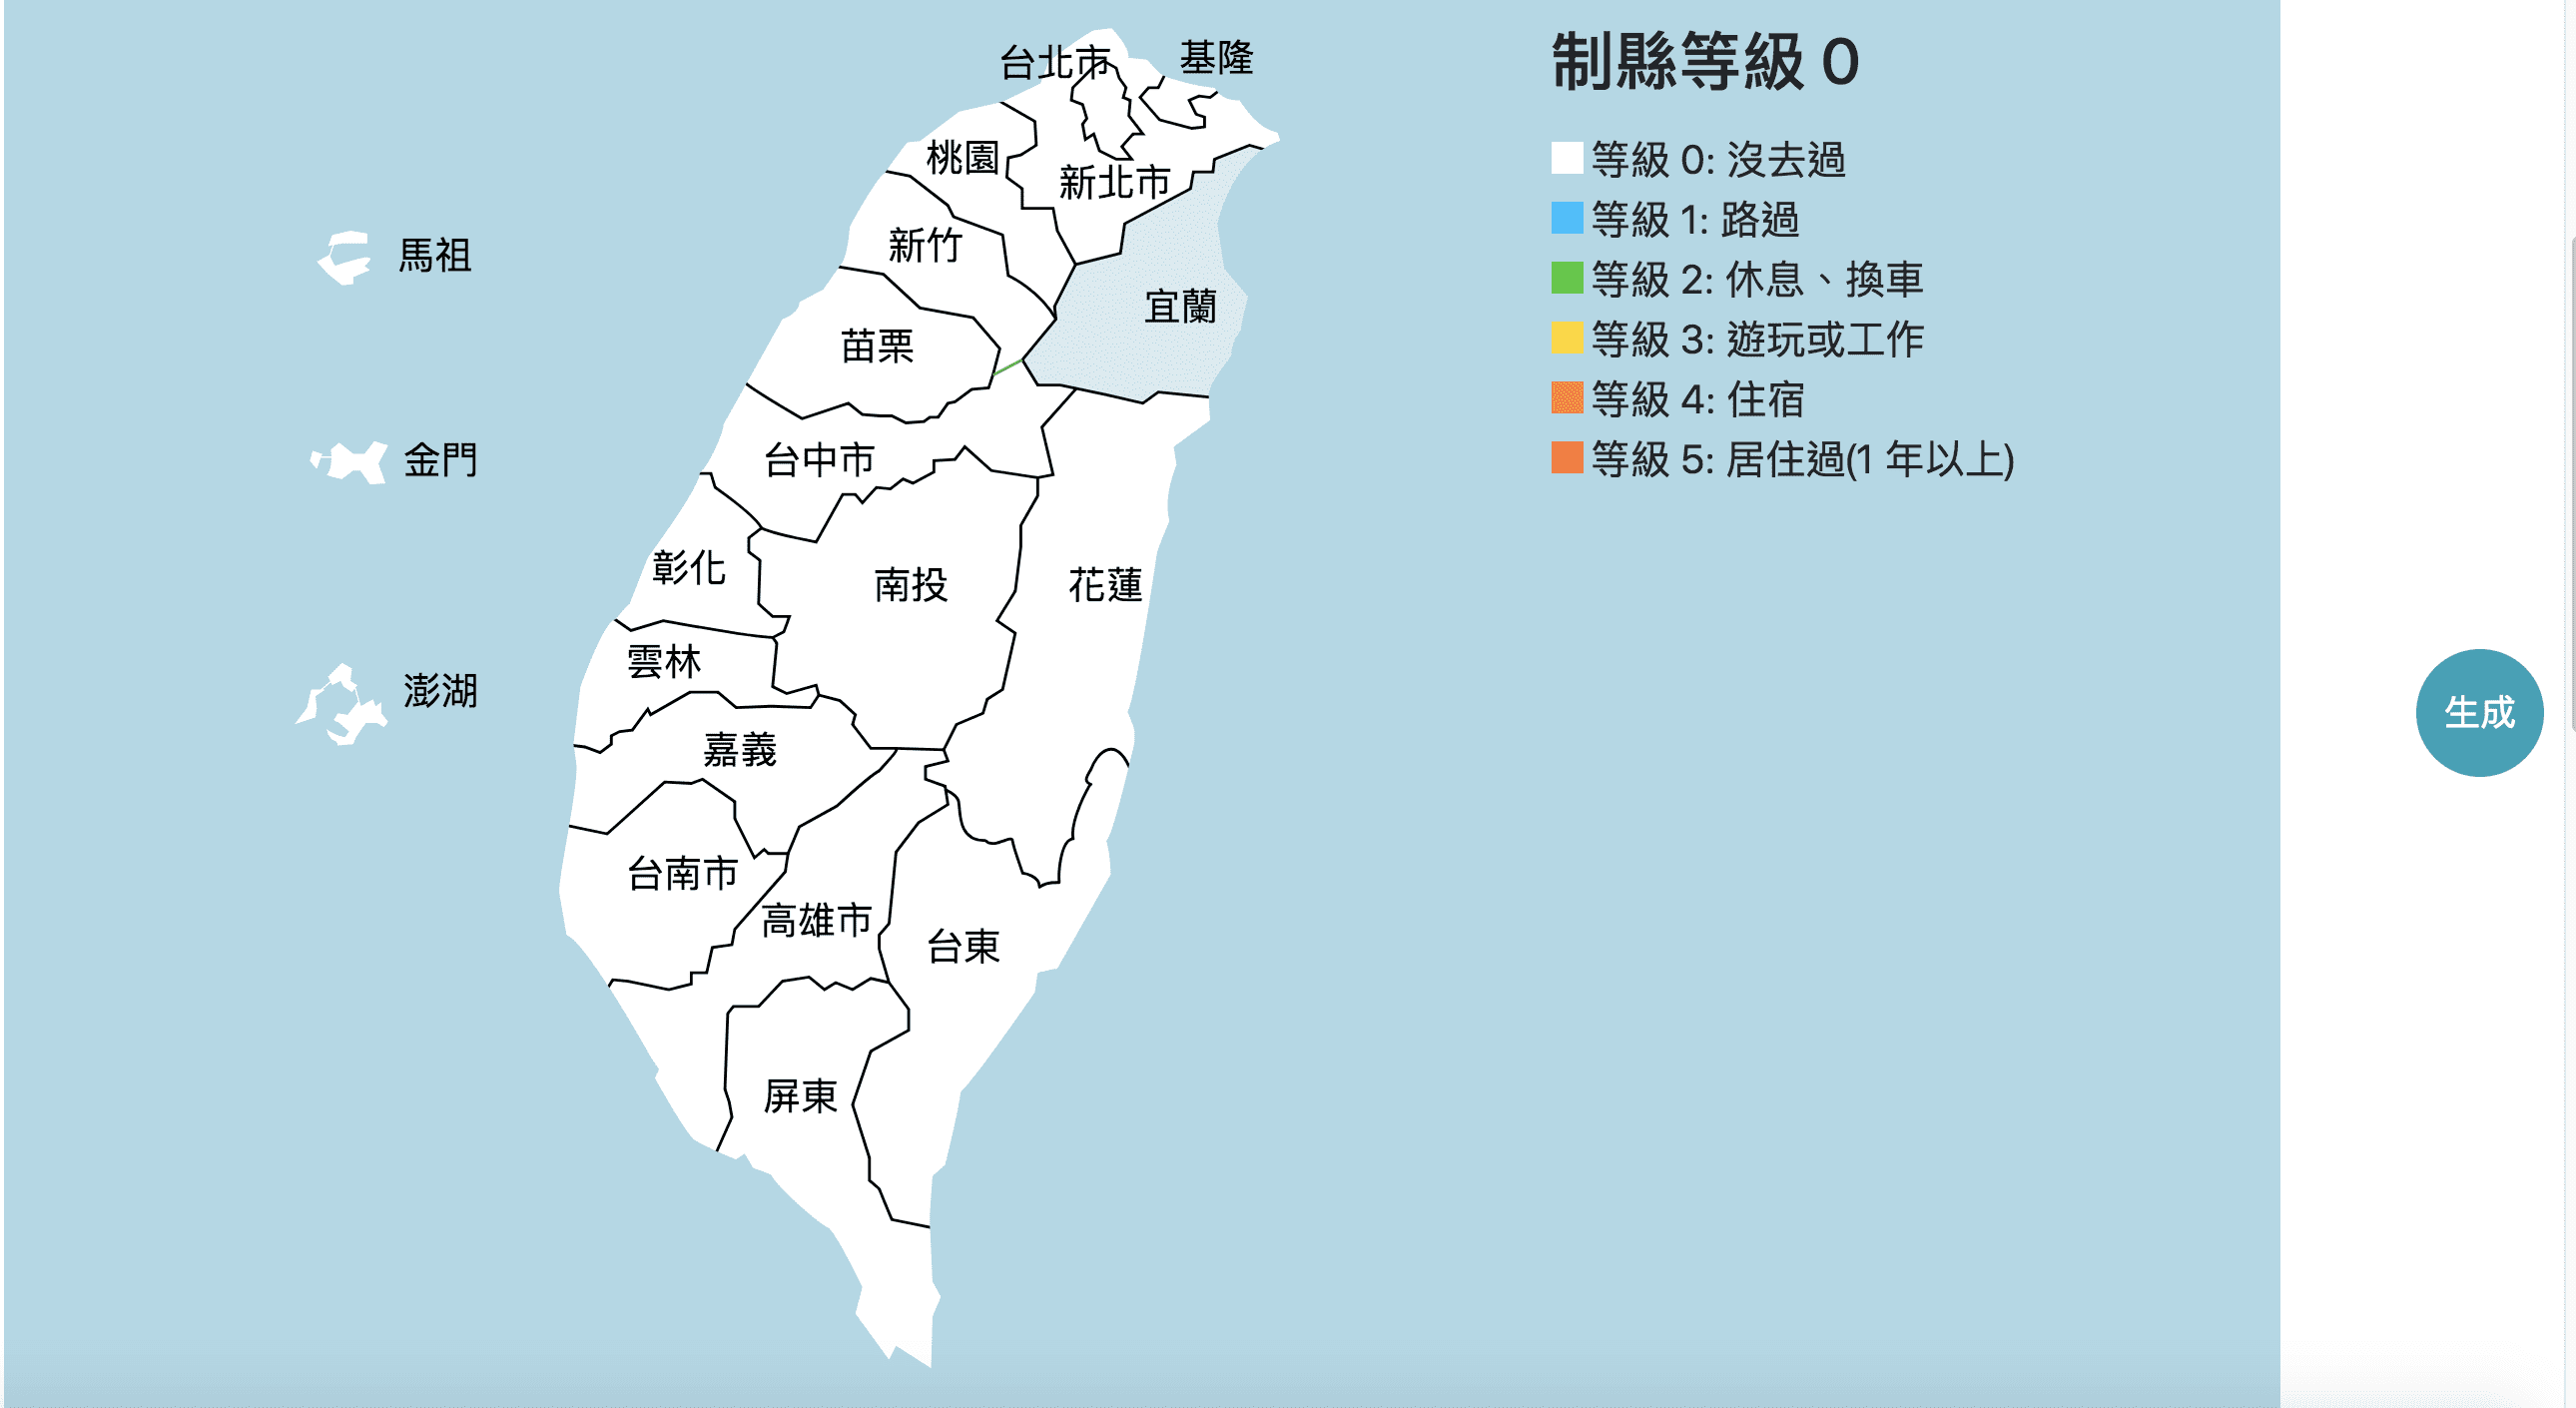 進階版台灣制縣等級/制島等級，比拼日本詳細版本喔～天兒，還有多少台灣要完成啊？！